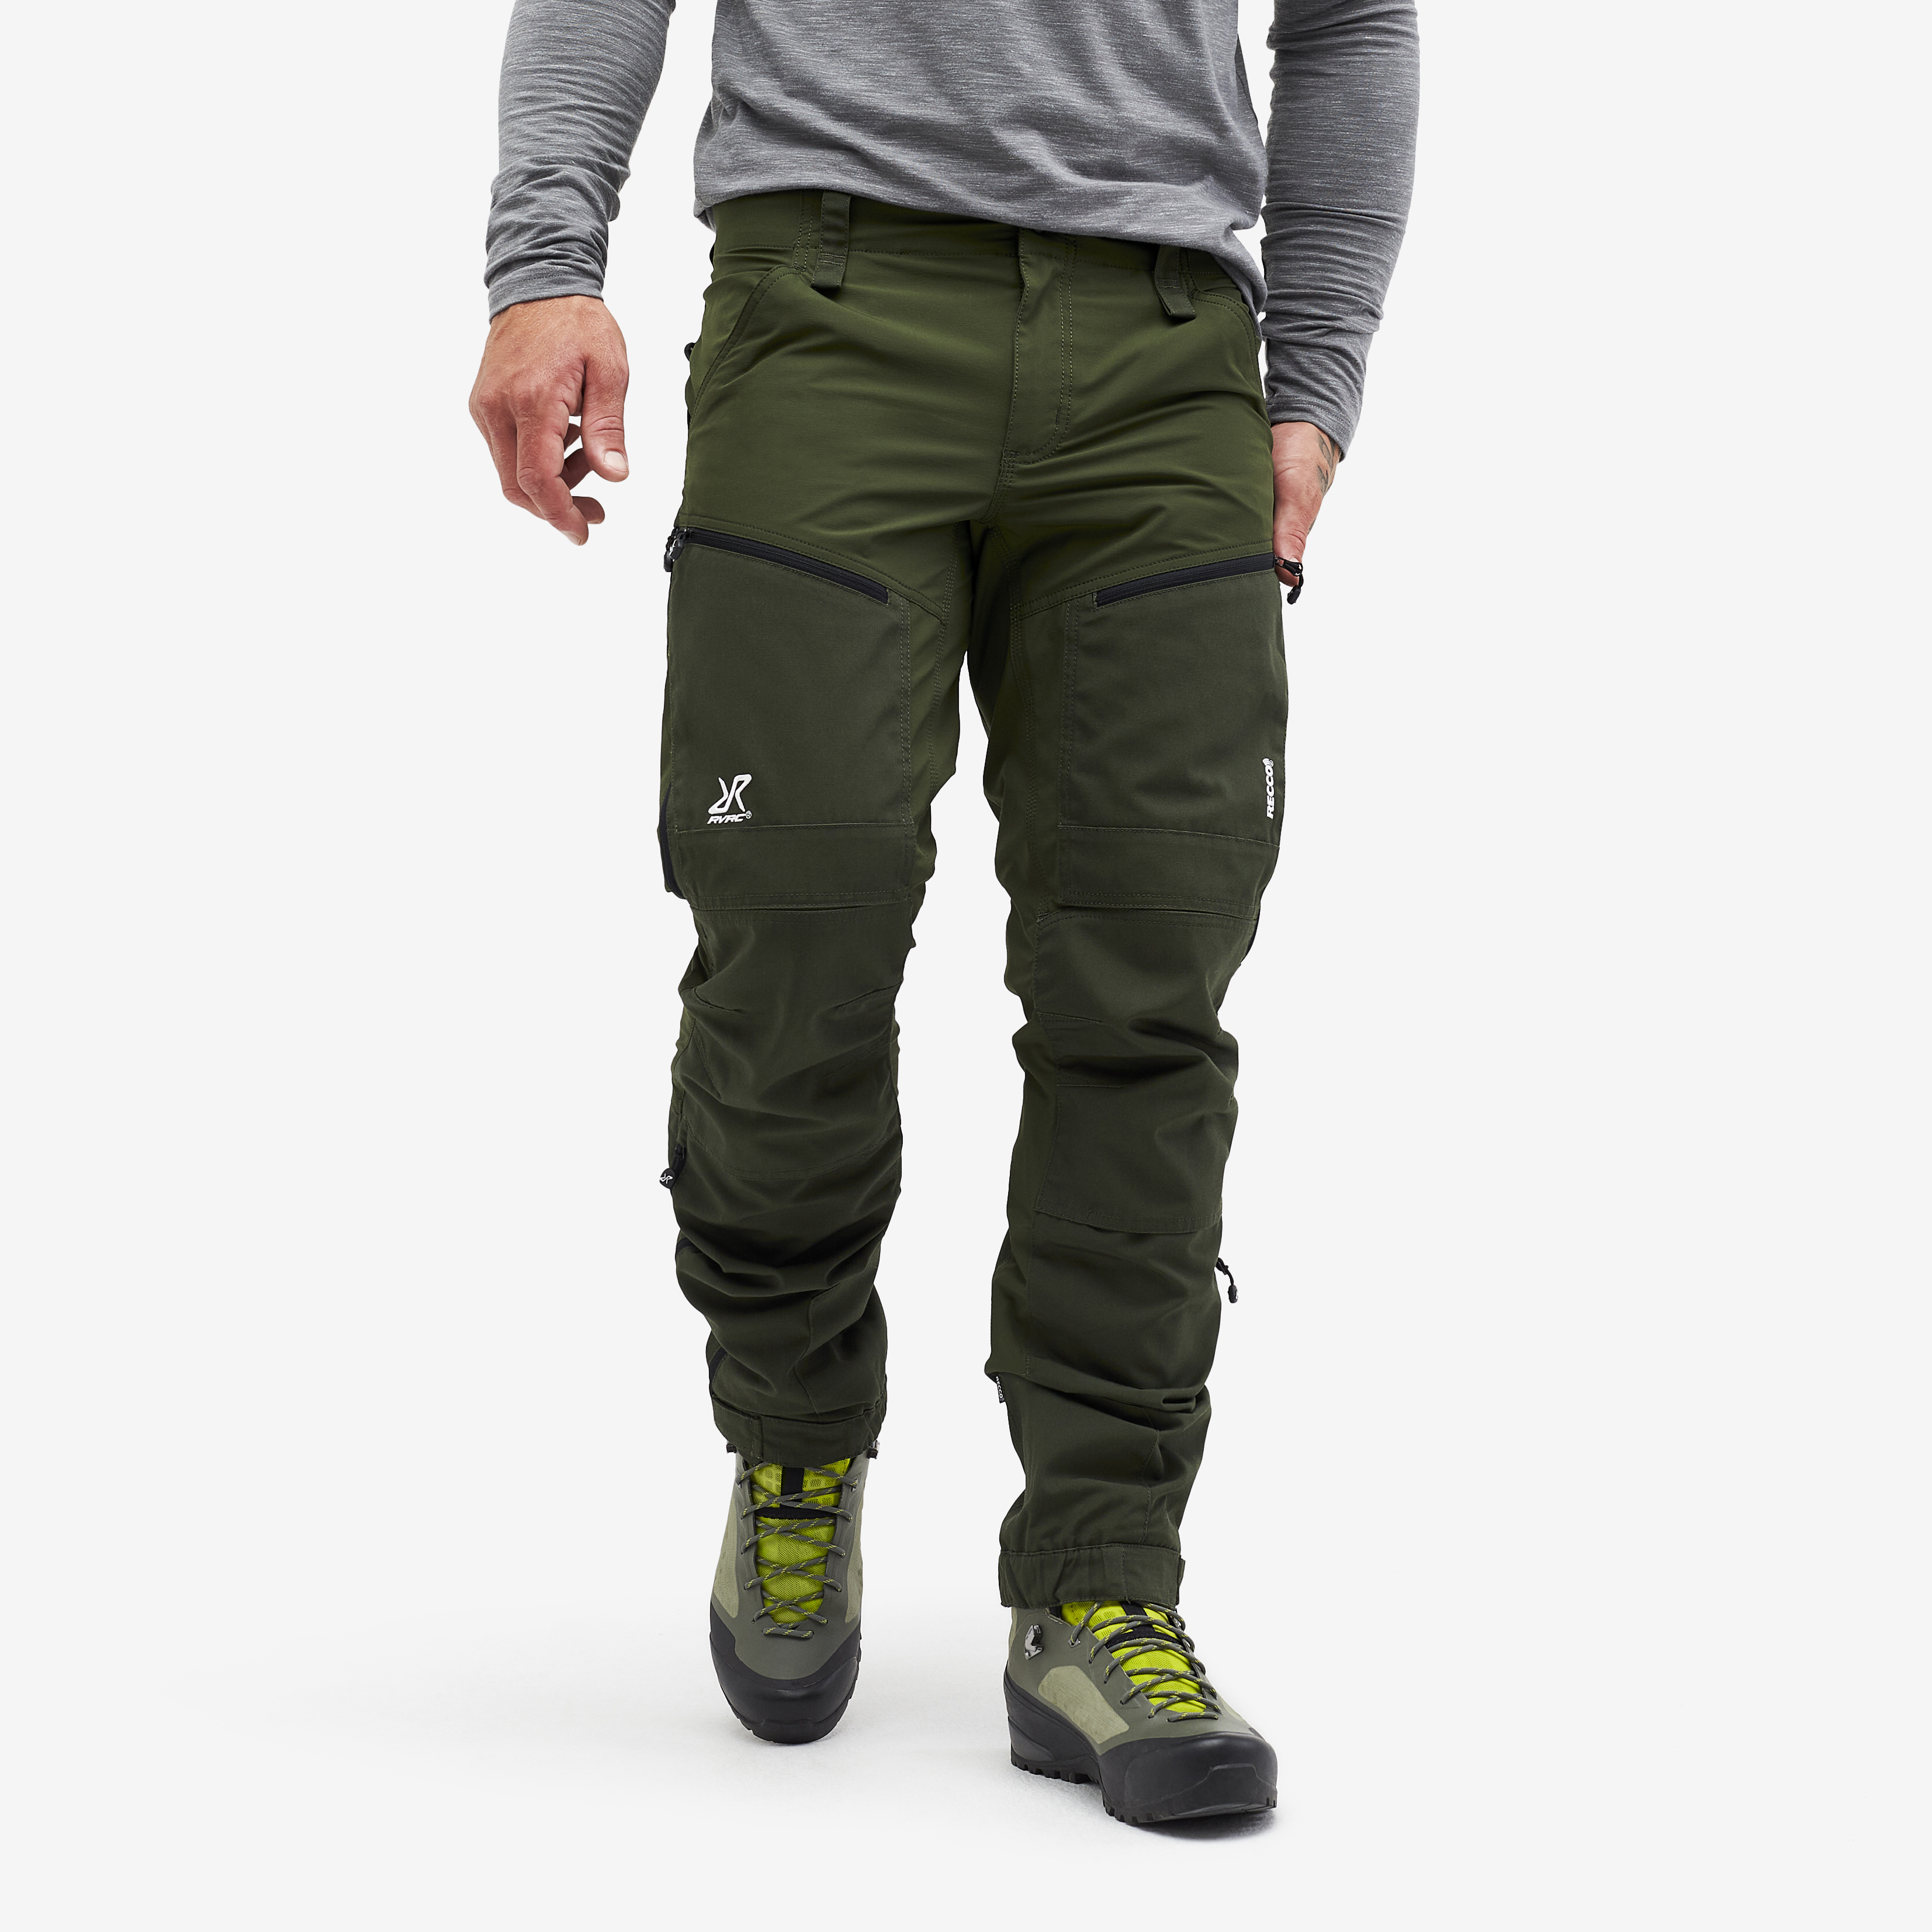 RVRC GP Pro Rescue spodnie trekkingowe męskie zielony